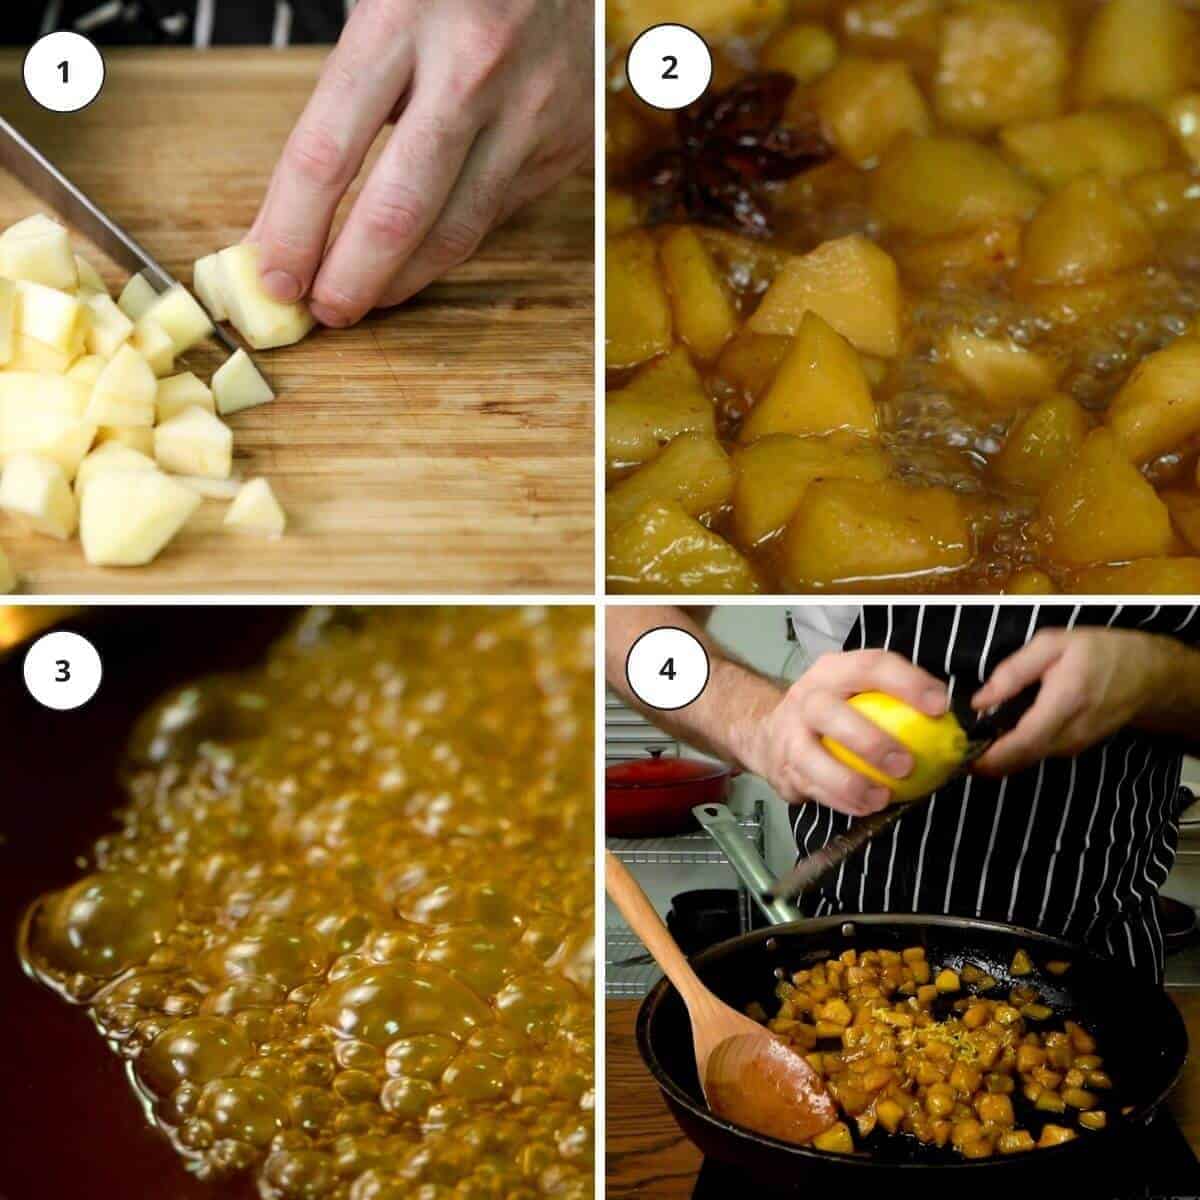 Picture steps for making apple piroshki filling.